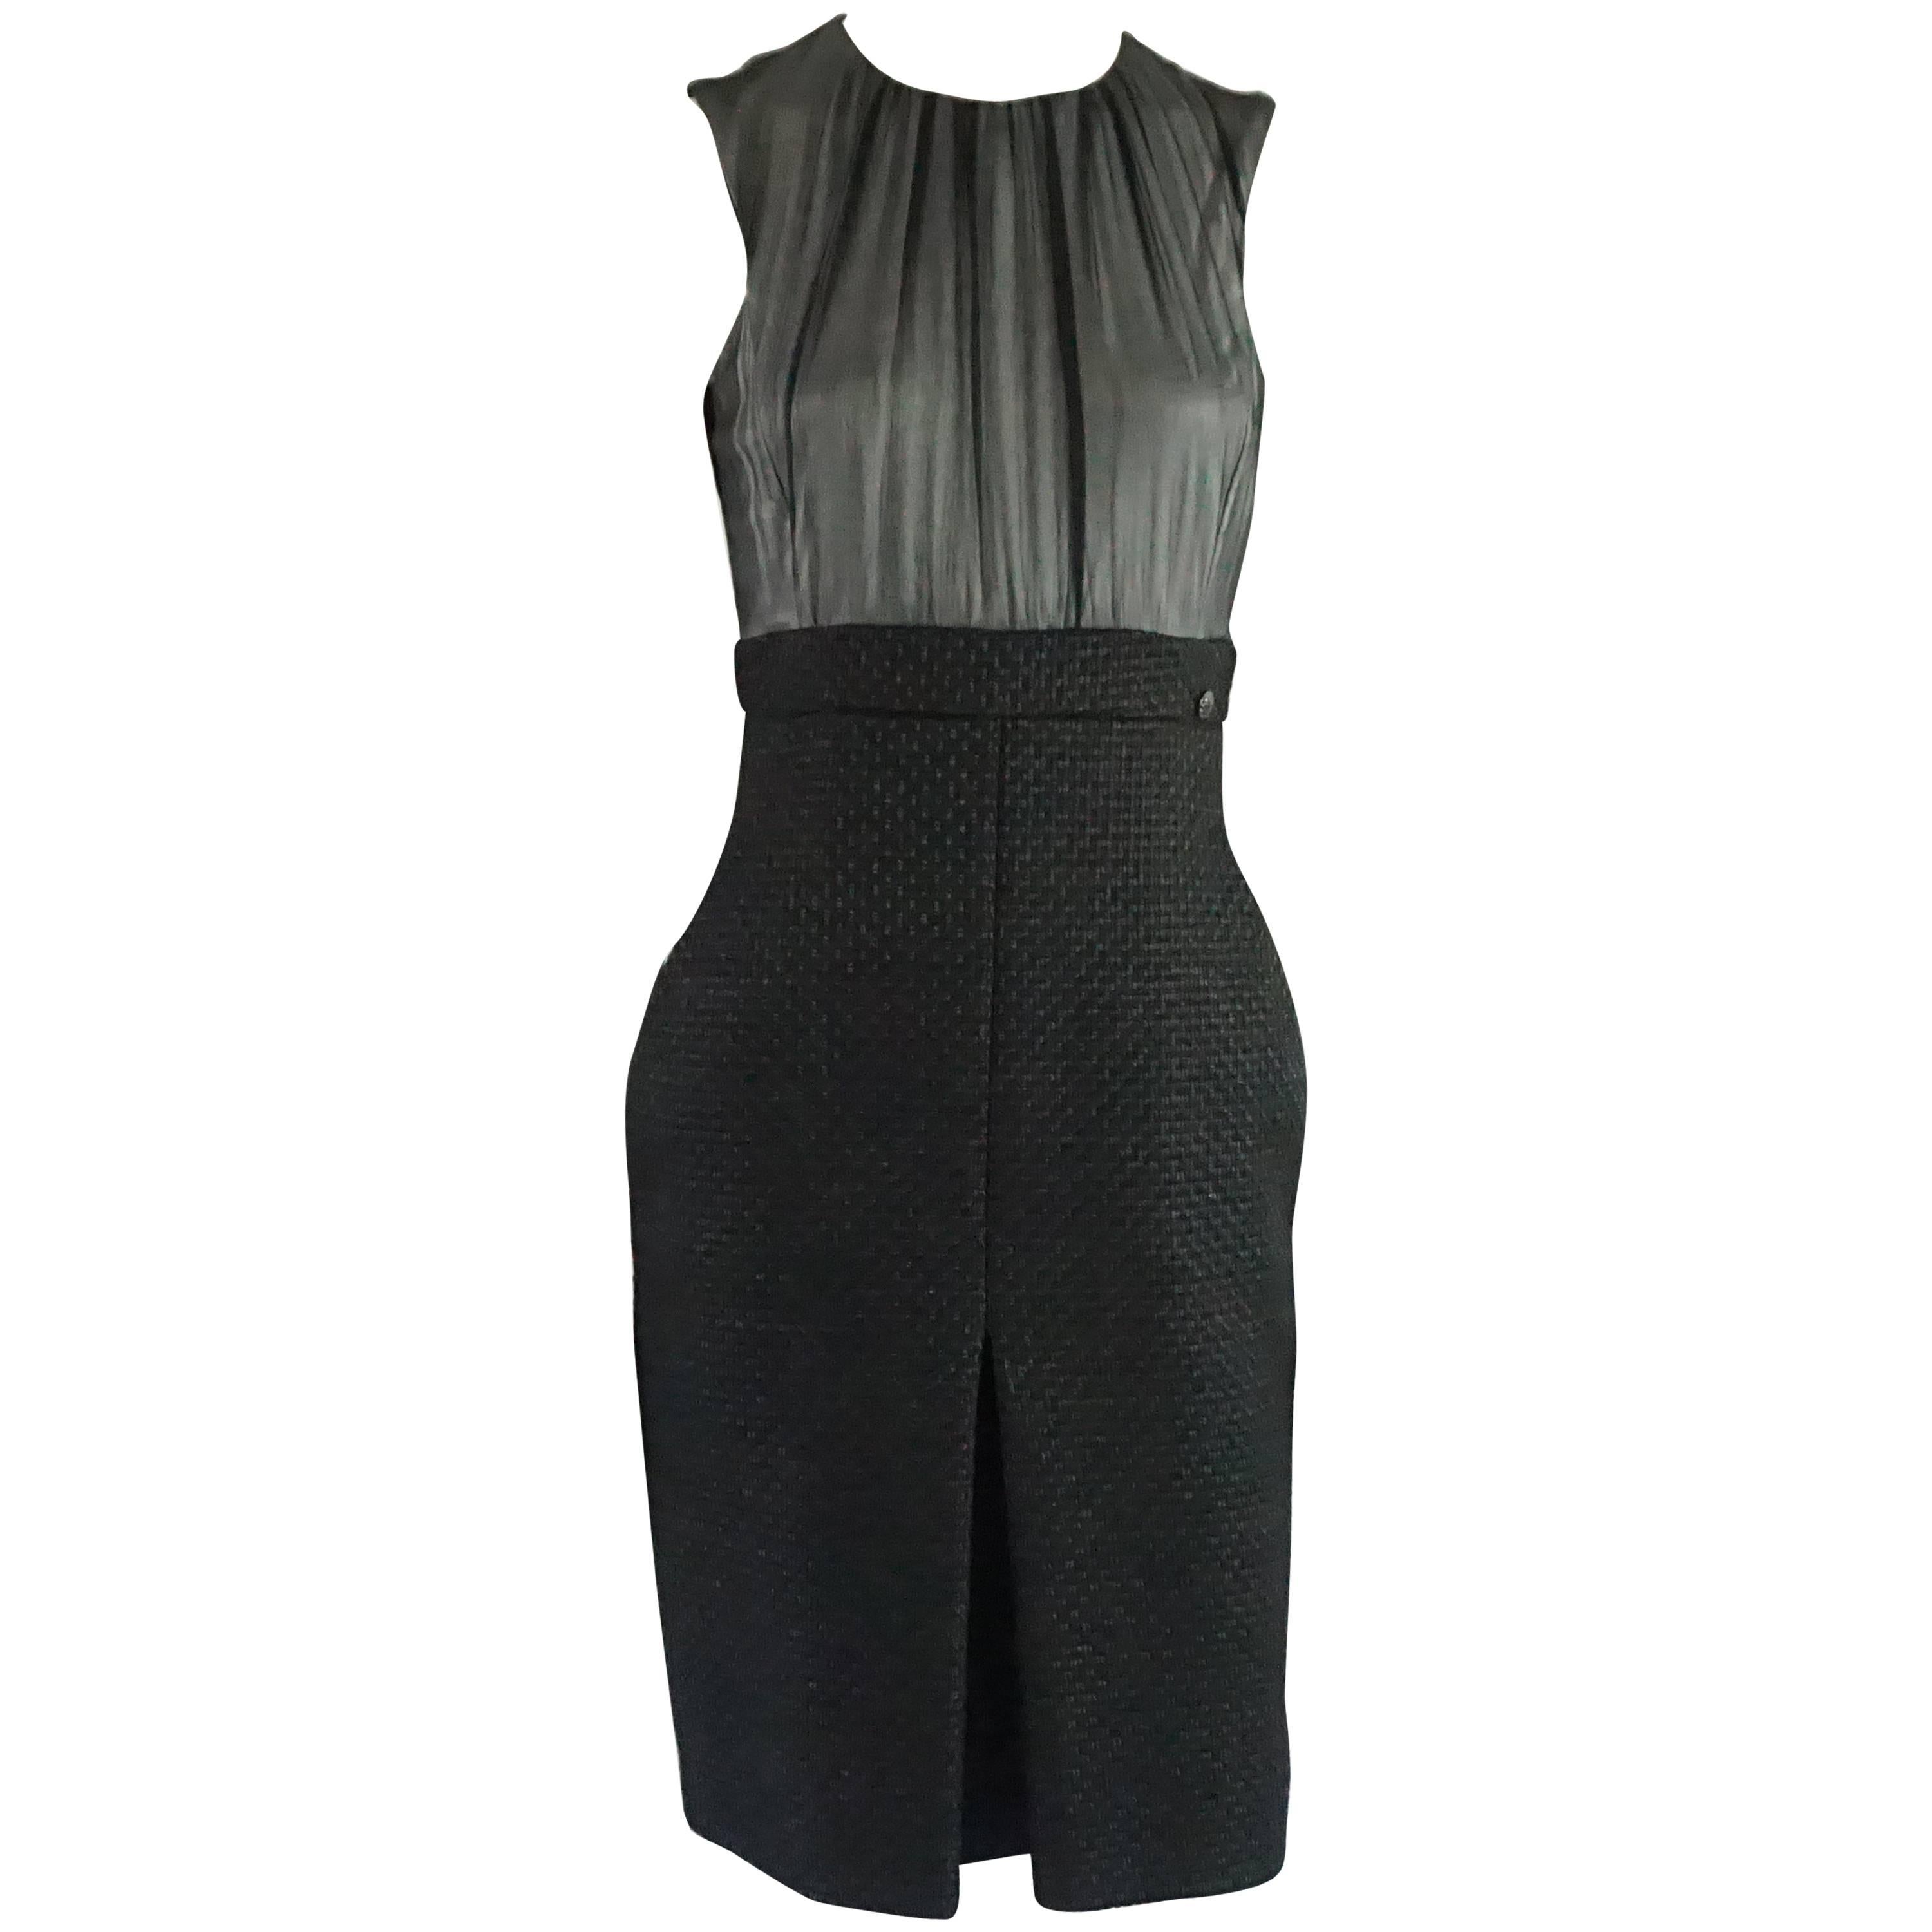 Chanel Schwarzes Kleid mit Seidenchiffon-Oberteil und Tweed-Rock - 38